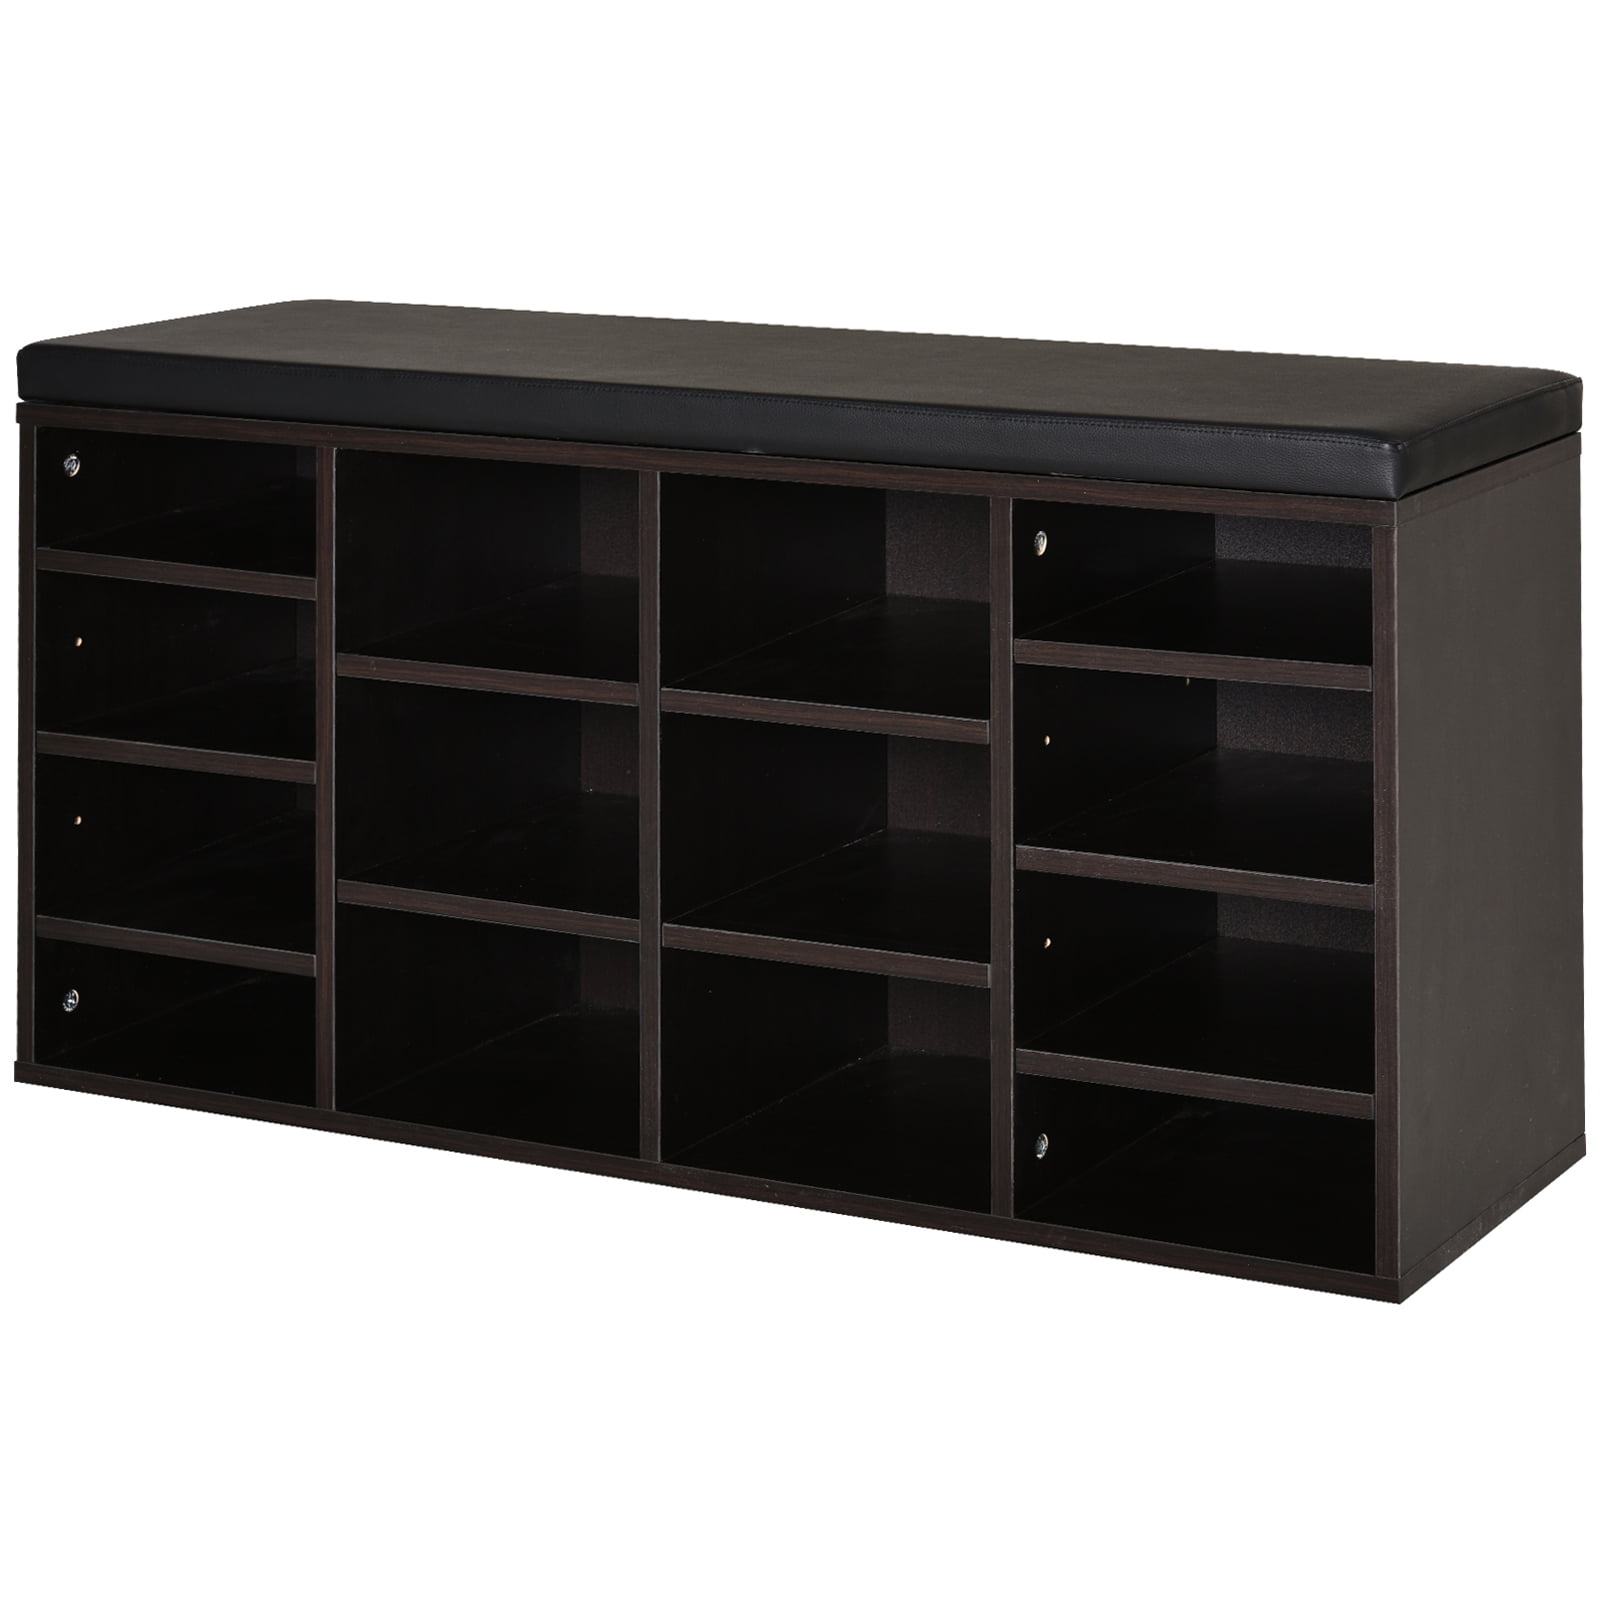 Cubbie Shoe Cabinet Storage Bench With, Cubbie Shoe Cabinet Storage Bench With Cushion Adjustable Shelves